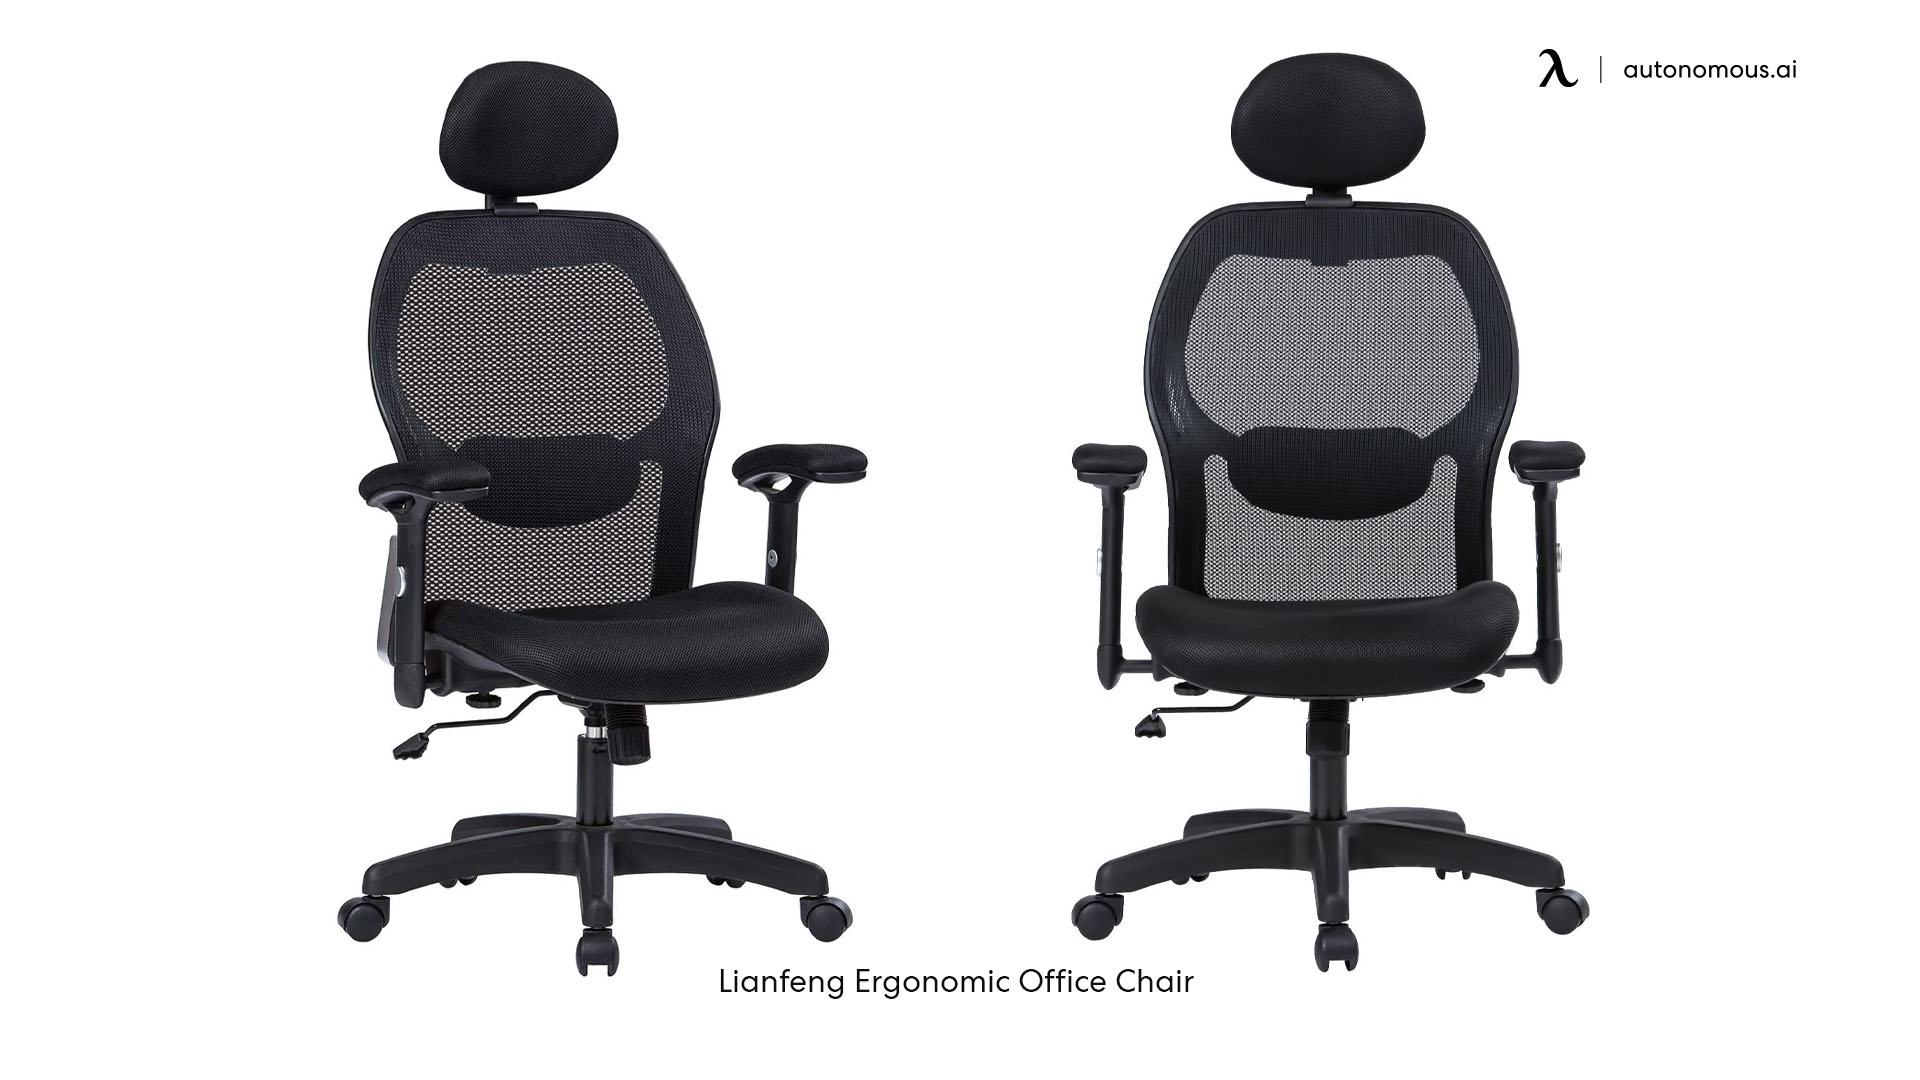 Lianfeng Ergonomic Office Chair